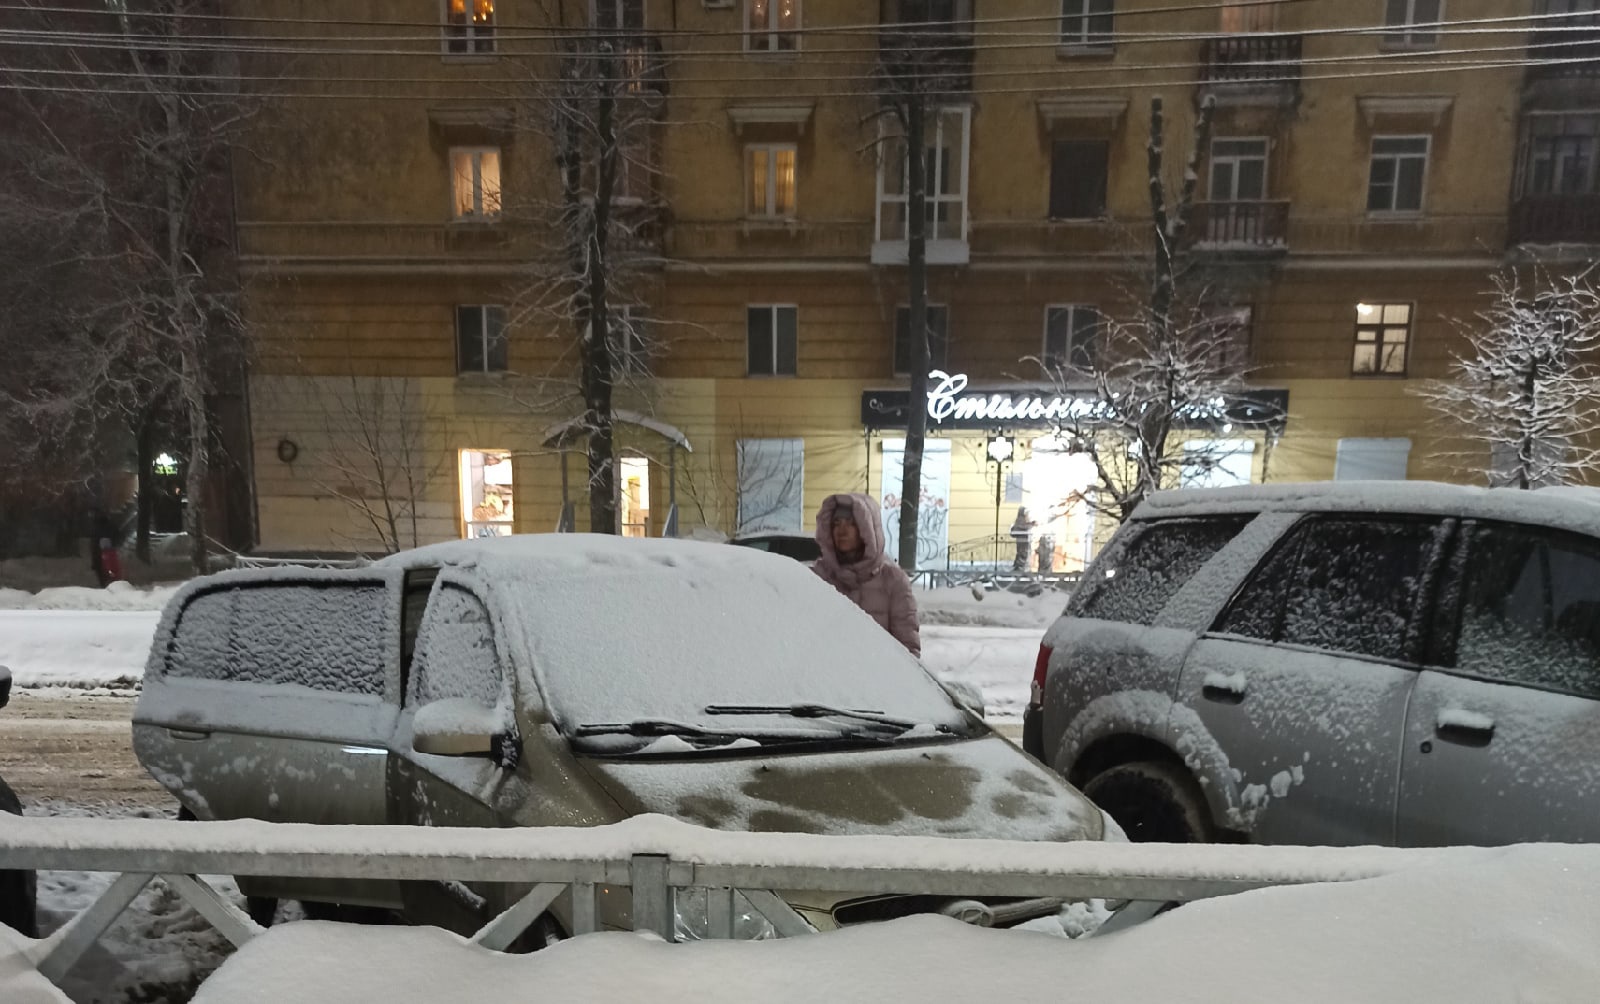  За сутки в Ярославле выпадет половина месячной нормы снега